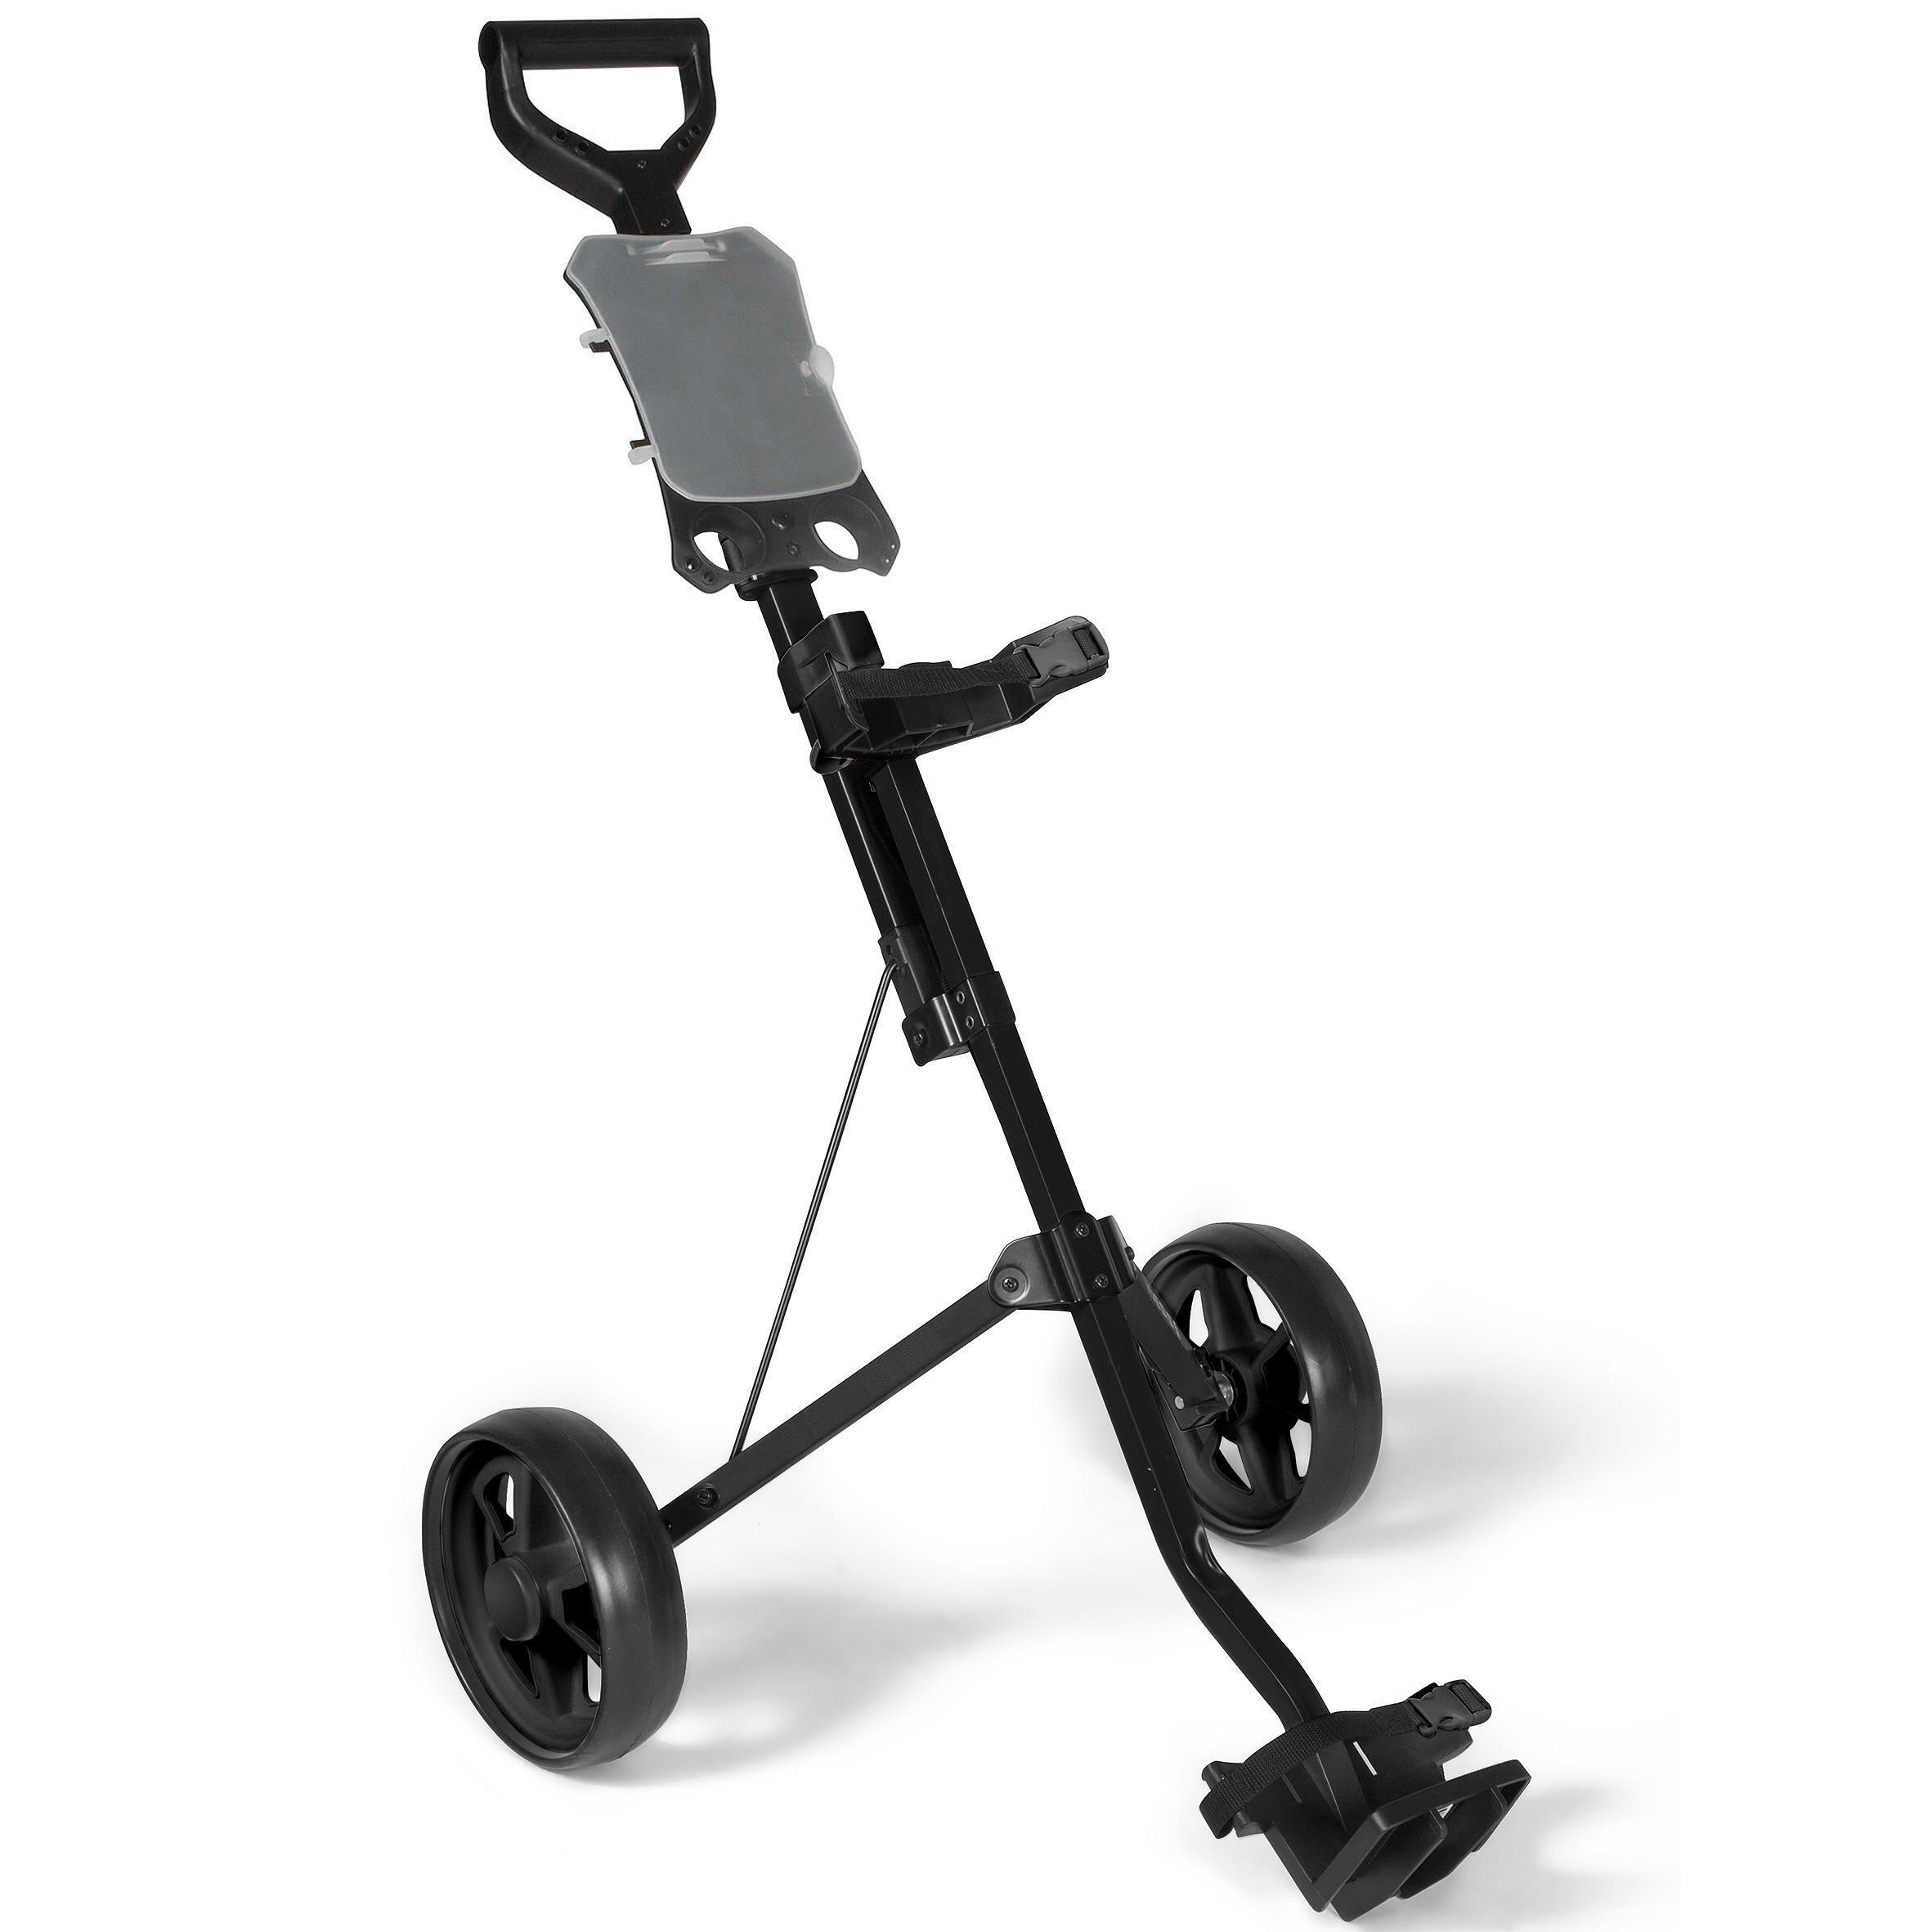 Decathlon 2-Wheel Golf Trolley - Inesis